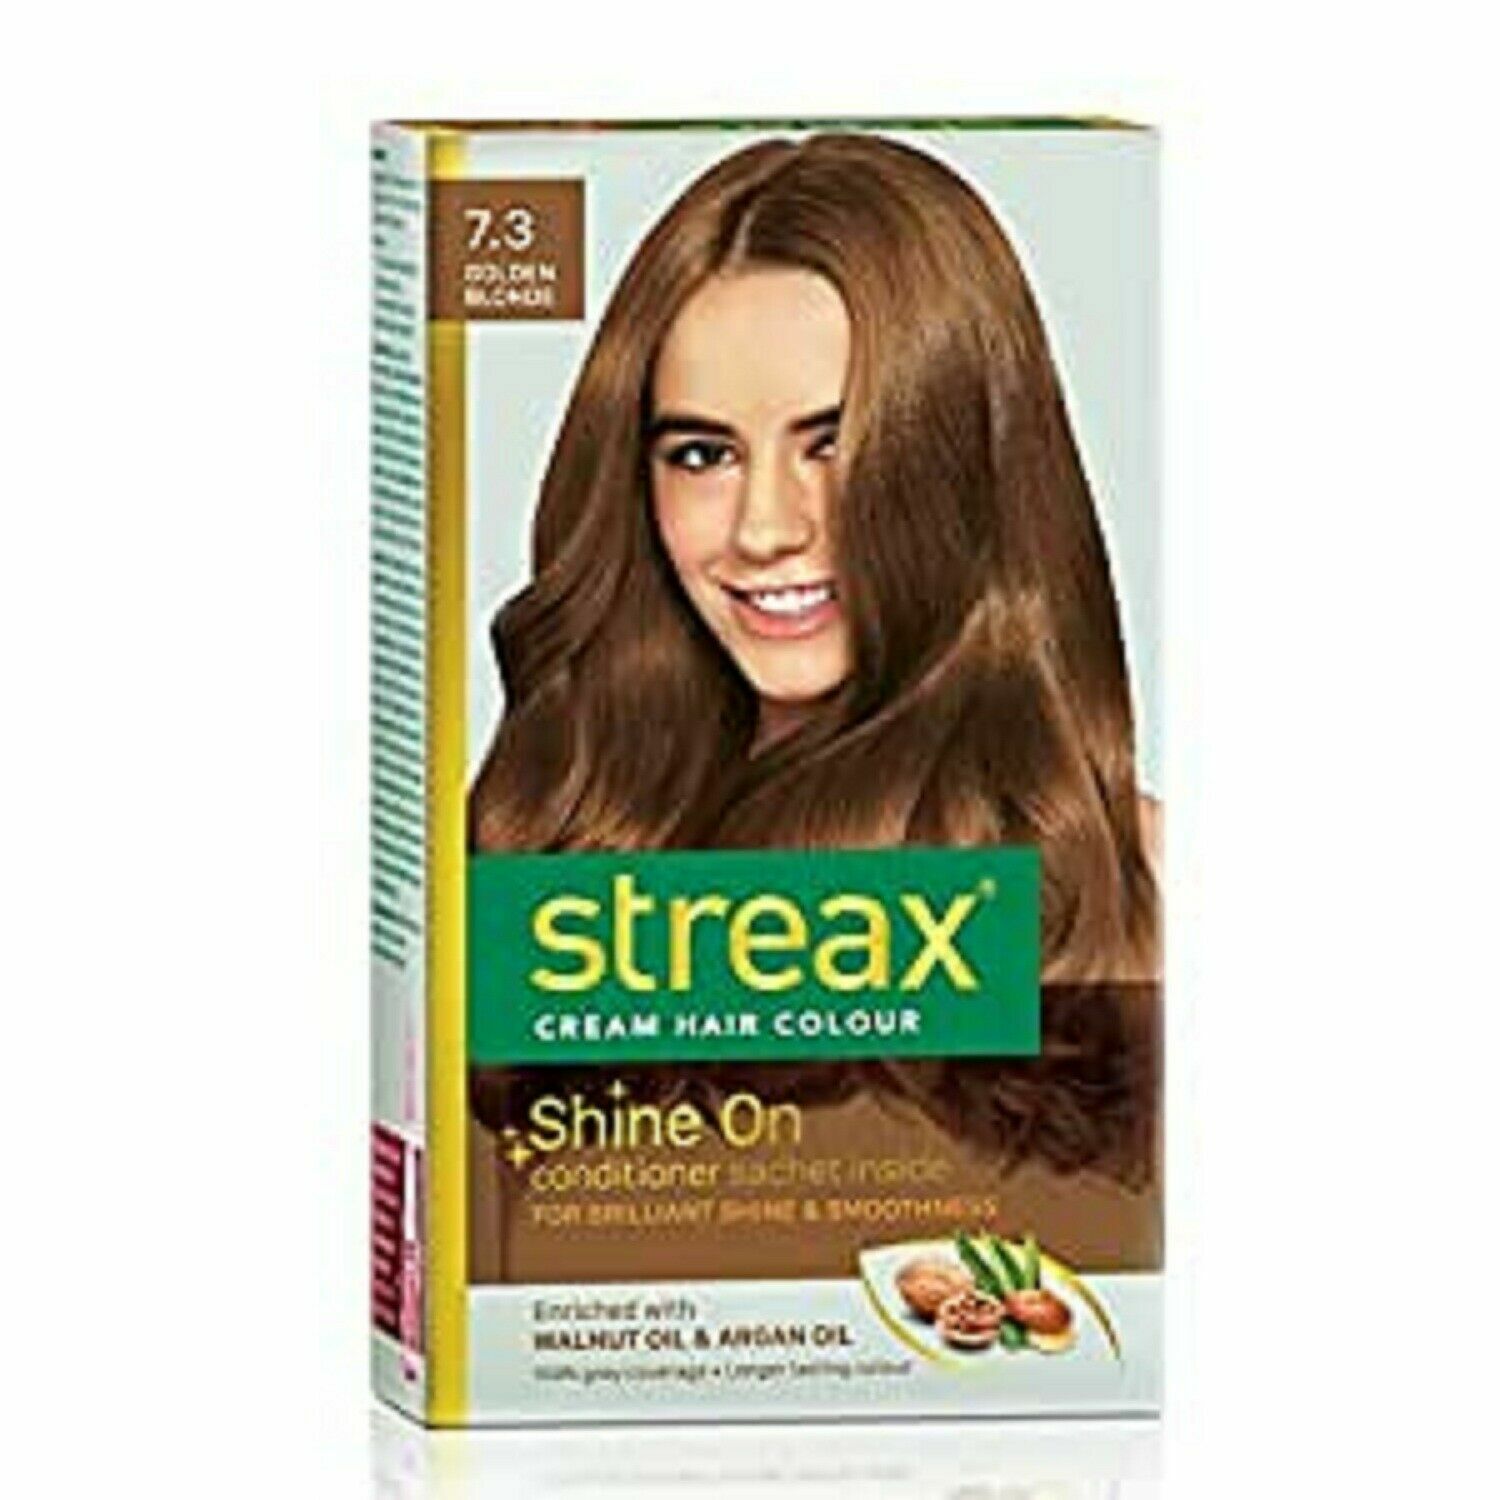 Streax Cream Hair Color For Women & Men Golden Blonde Walnut Oil & ArganOil  60ml | eBay